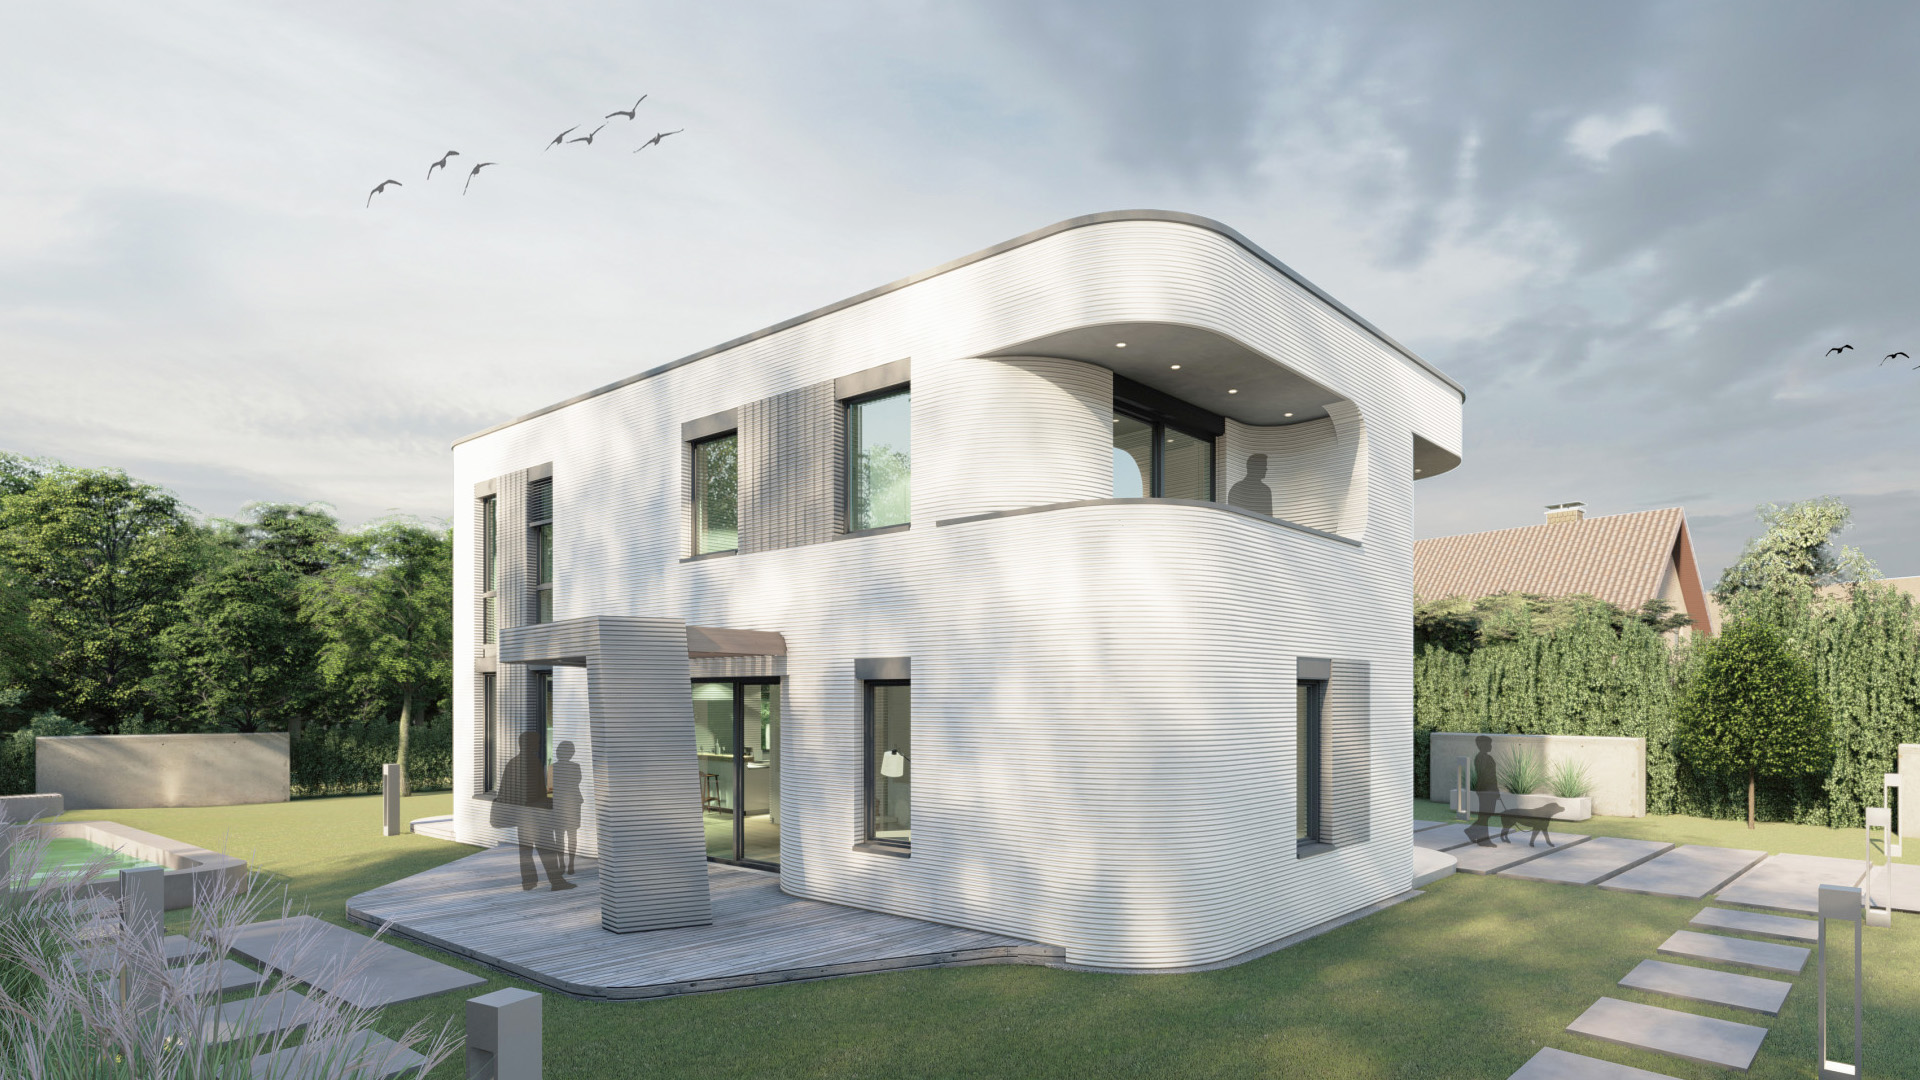 Casa del futuro in stampa 3d: architettura sostenibile con le case per tutti